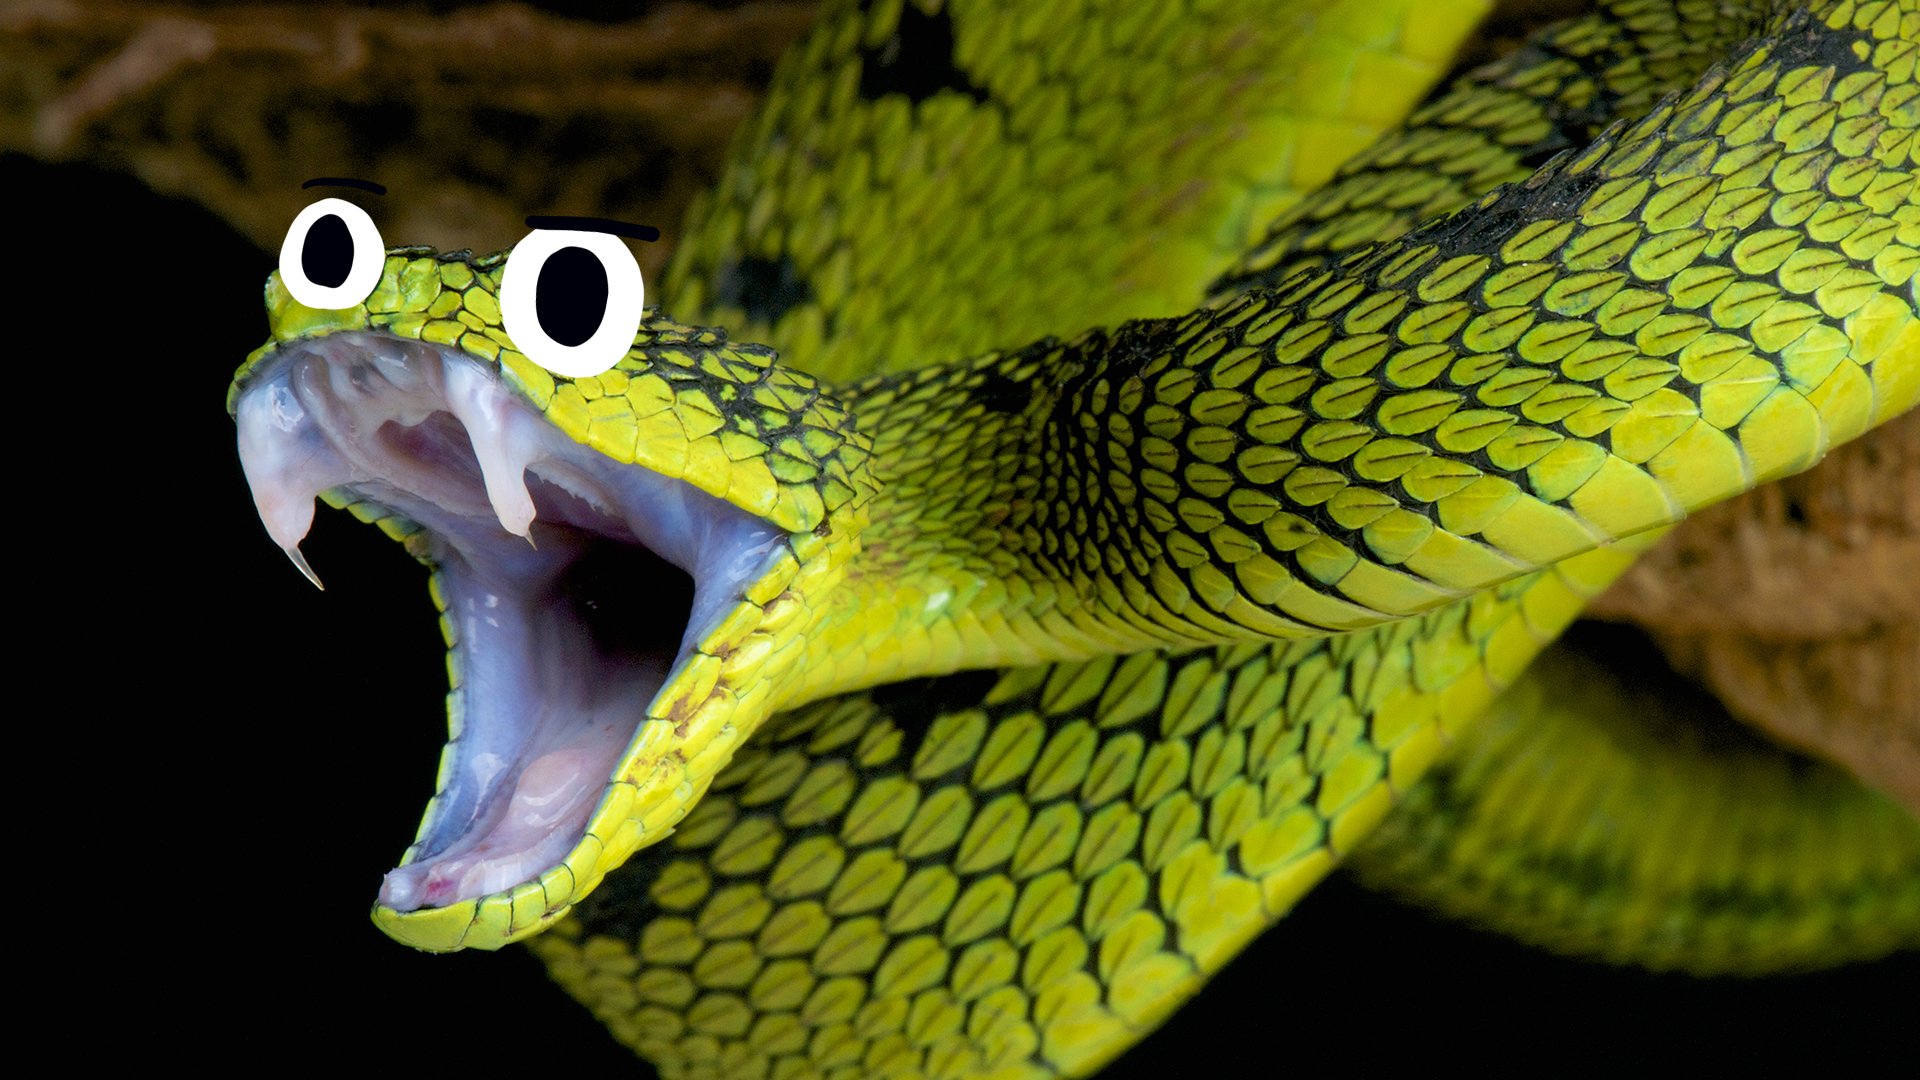 A snake spitting venom